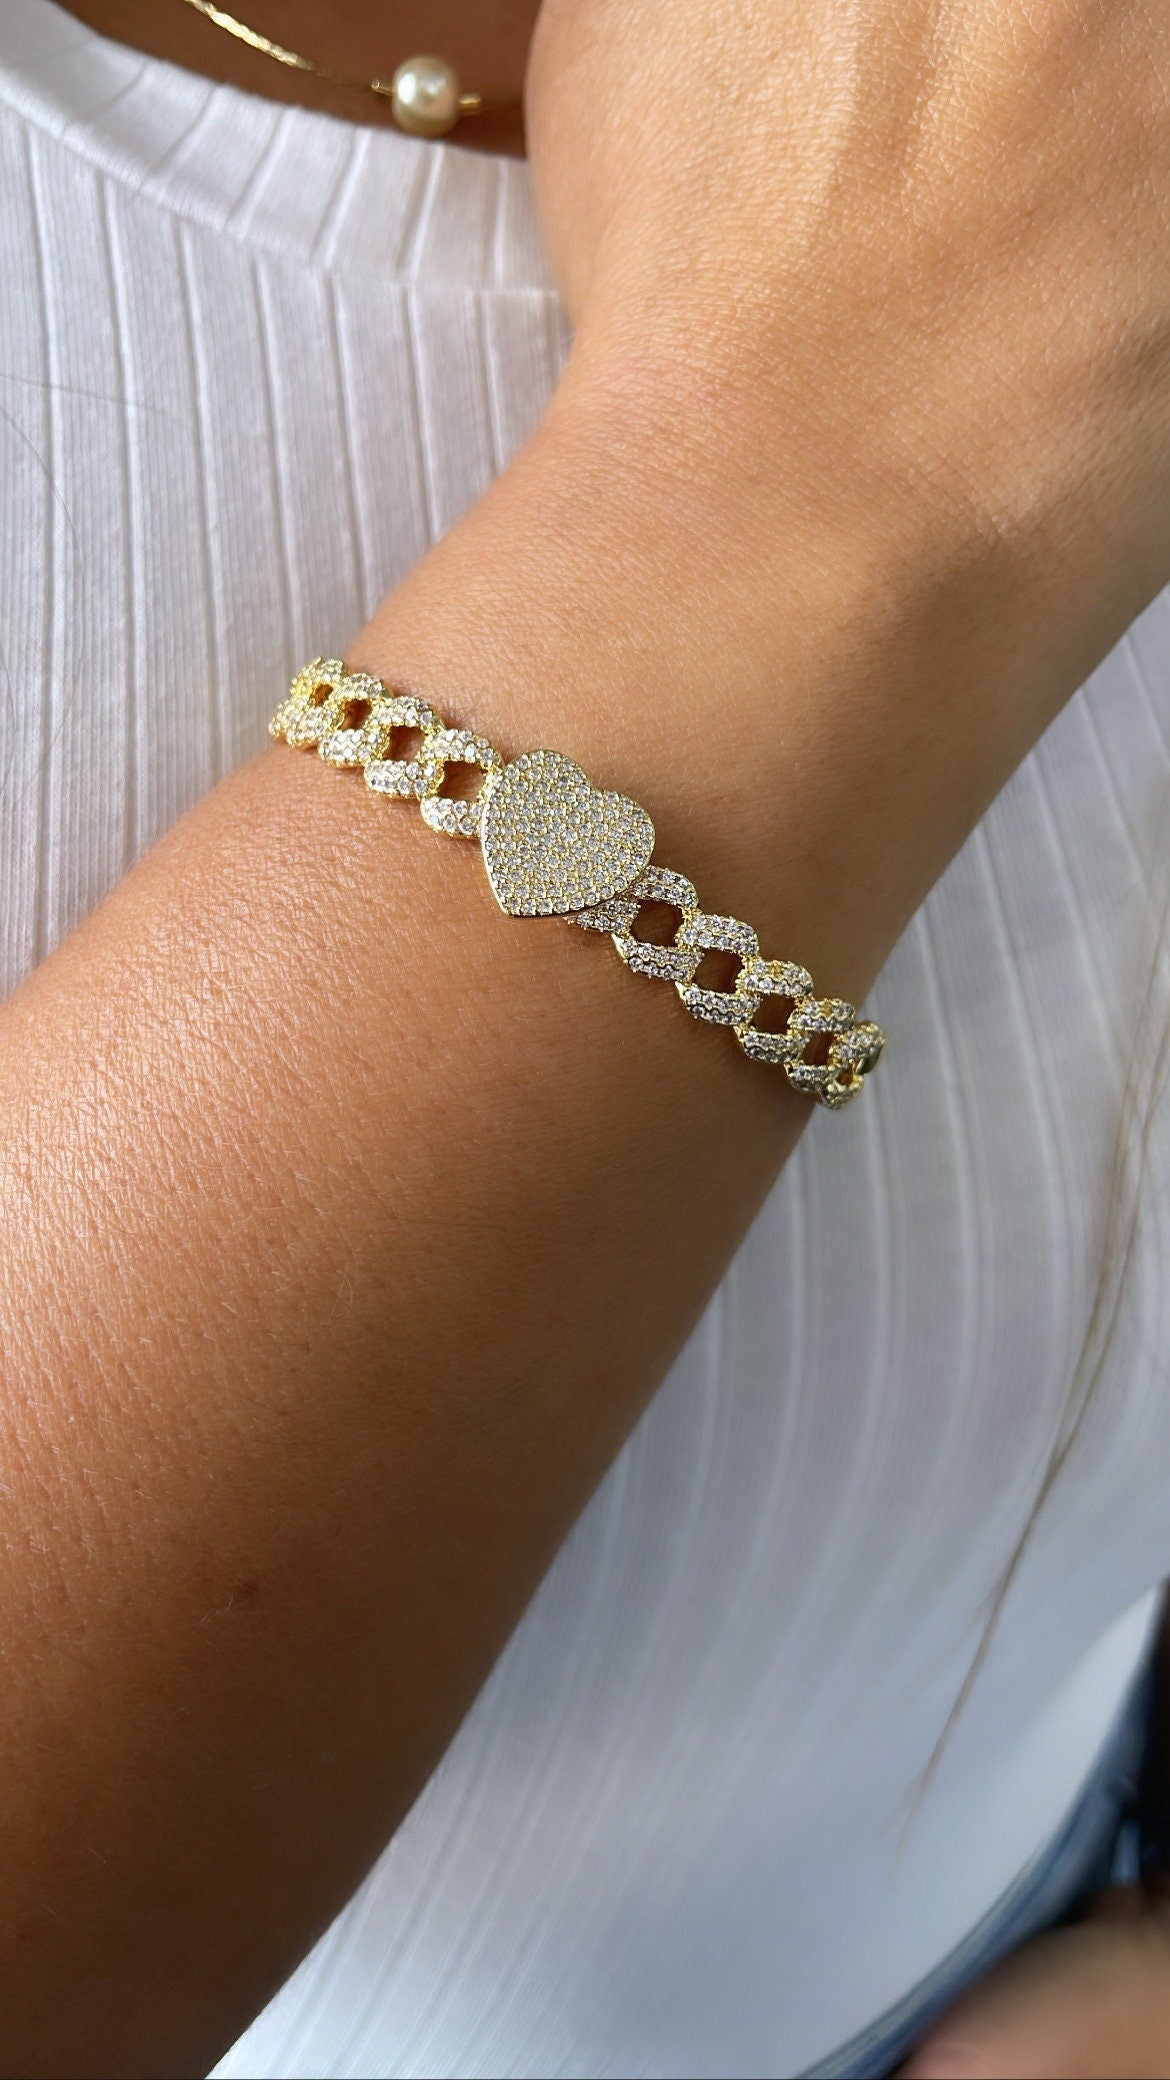 18k Gold Filled Pave Link Cuff Bracelet With Pave Heart & Star Bracelet